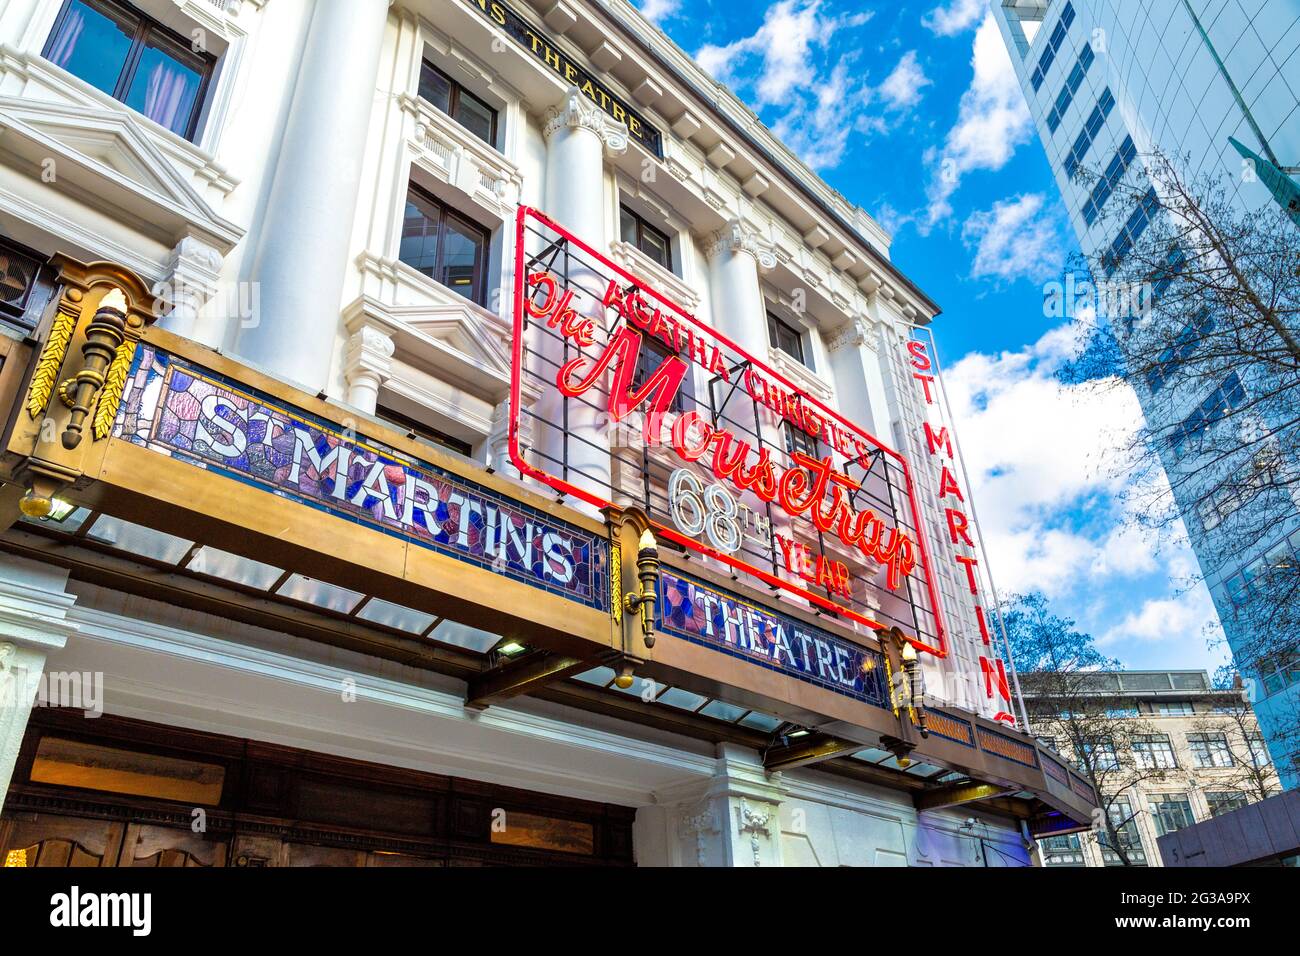 Außenansicht des St. Martin's Theatre, in dem sich das am längsten laufende Stück im West End befindet - The Mousetrap von Agatha Christie, London, Großbritannien Stockfoto